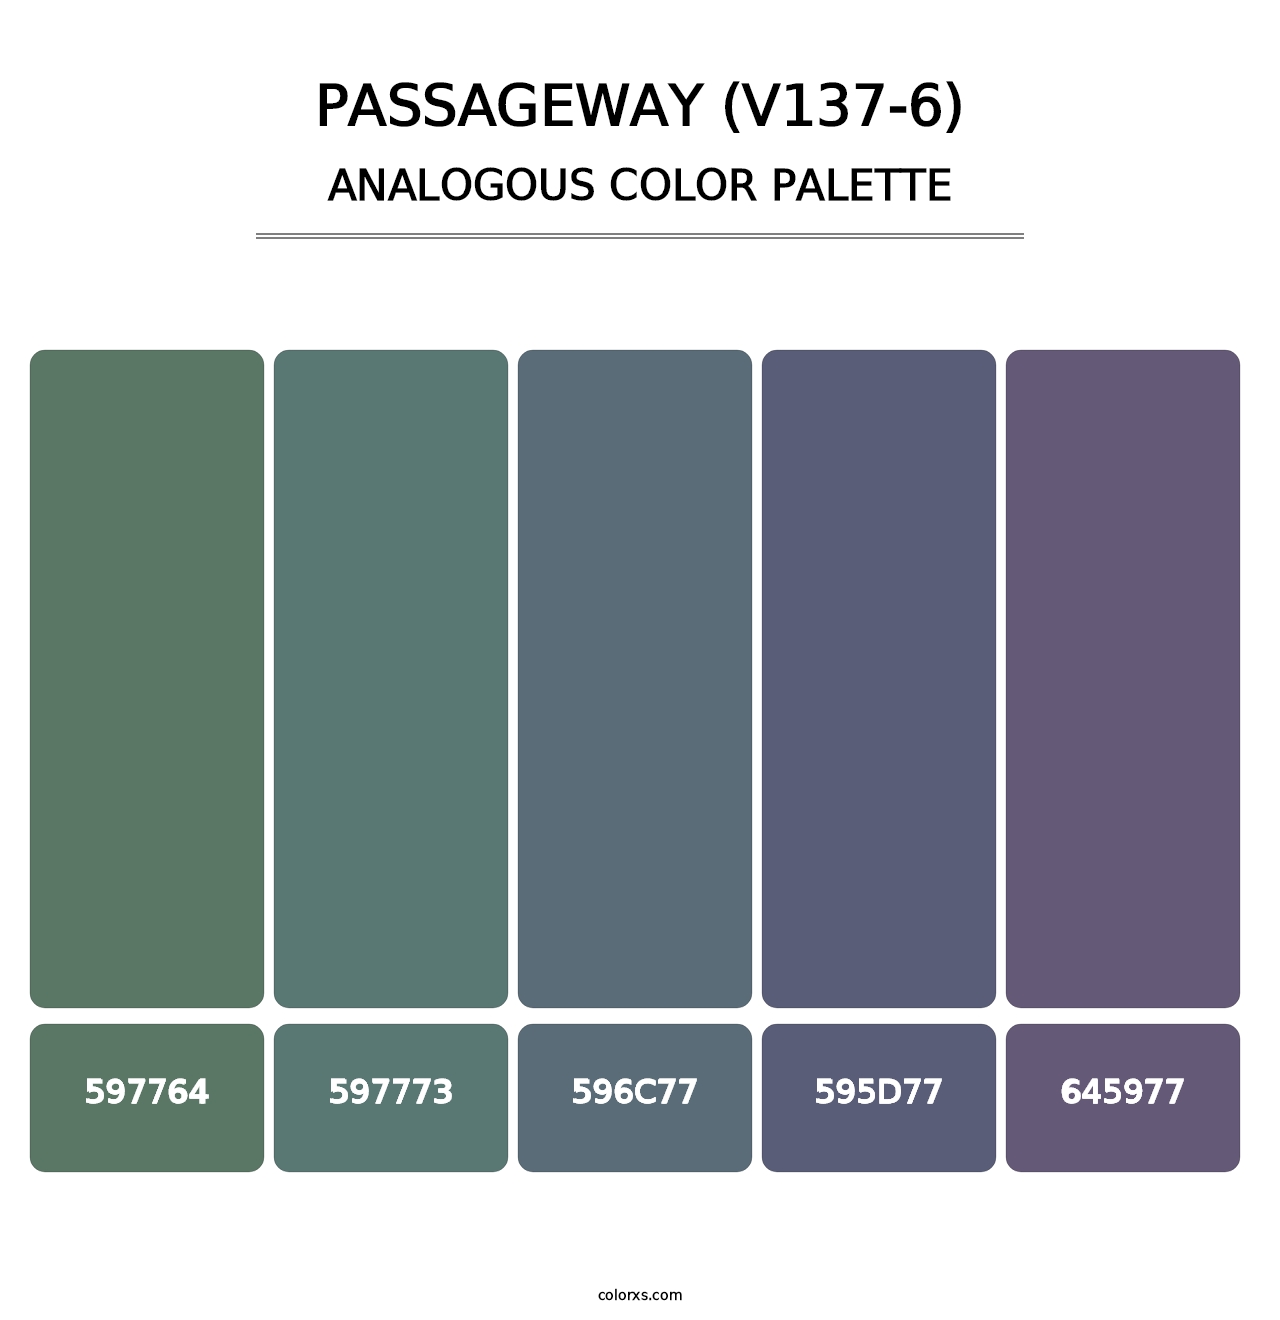 Passageway (V137-6) - Analogous Color Palette